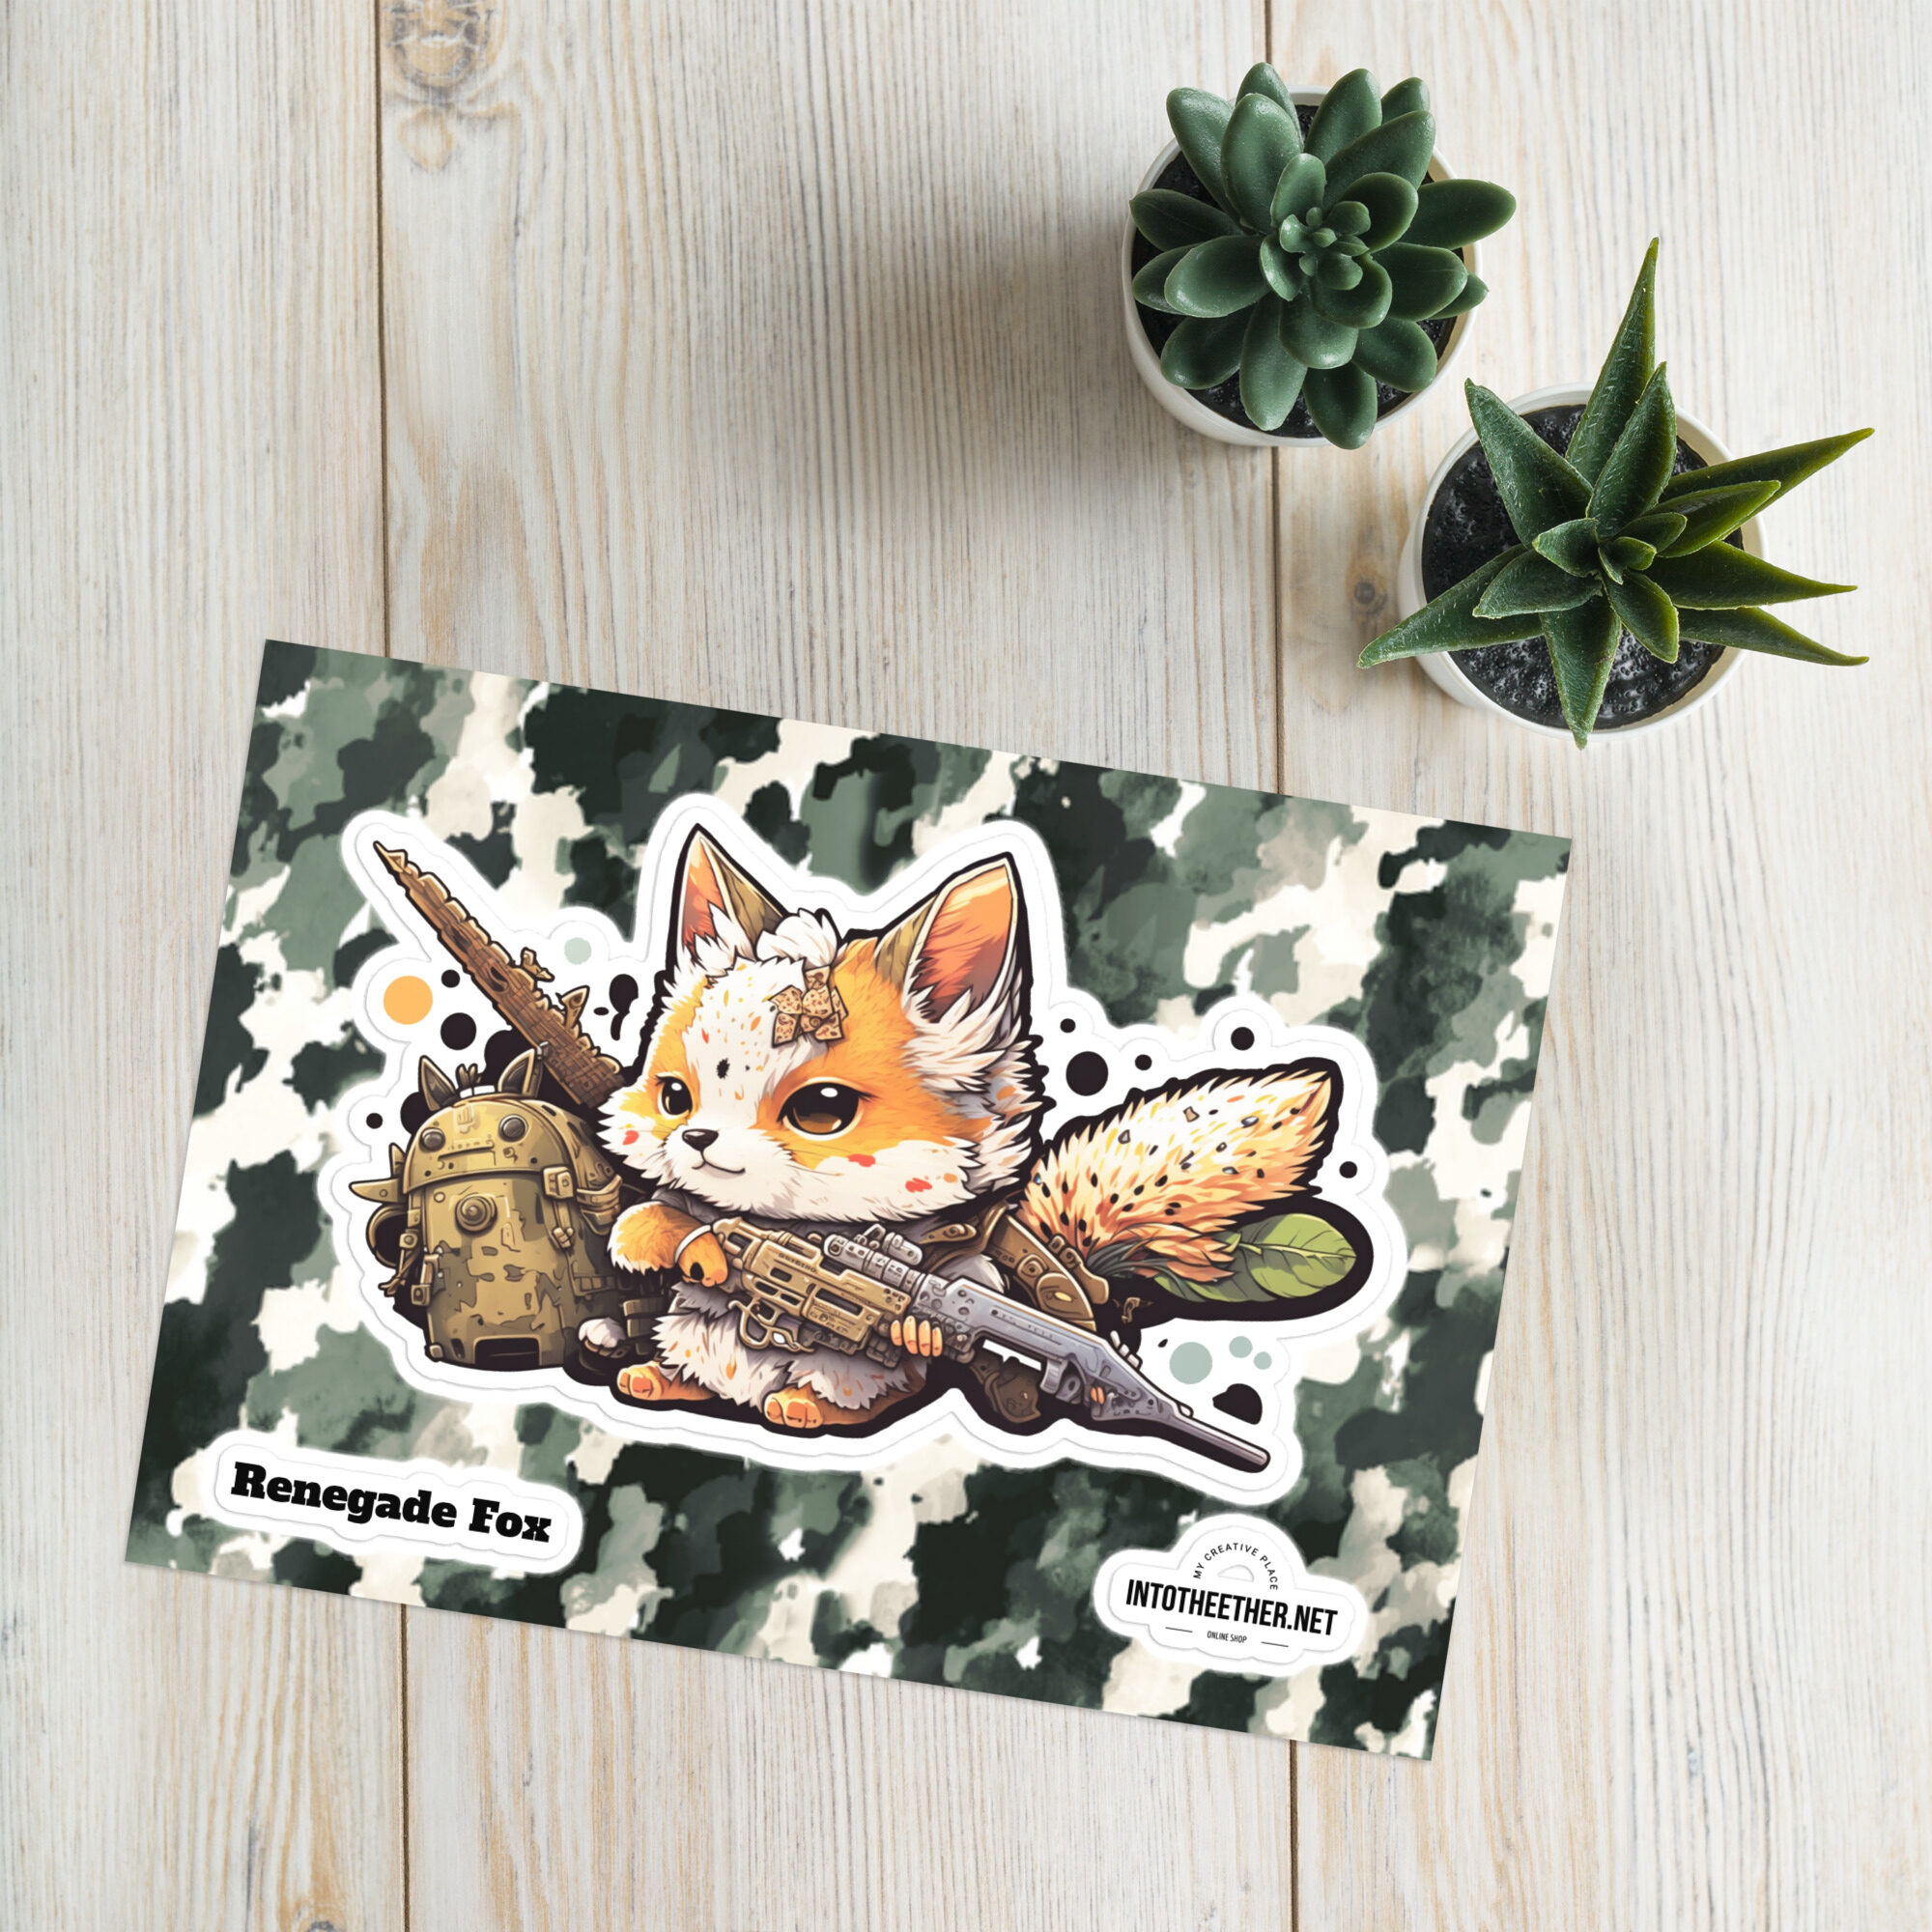 Renegade Fox | Fantasy Character Artwork | XL Sticker Sheet